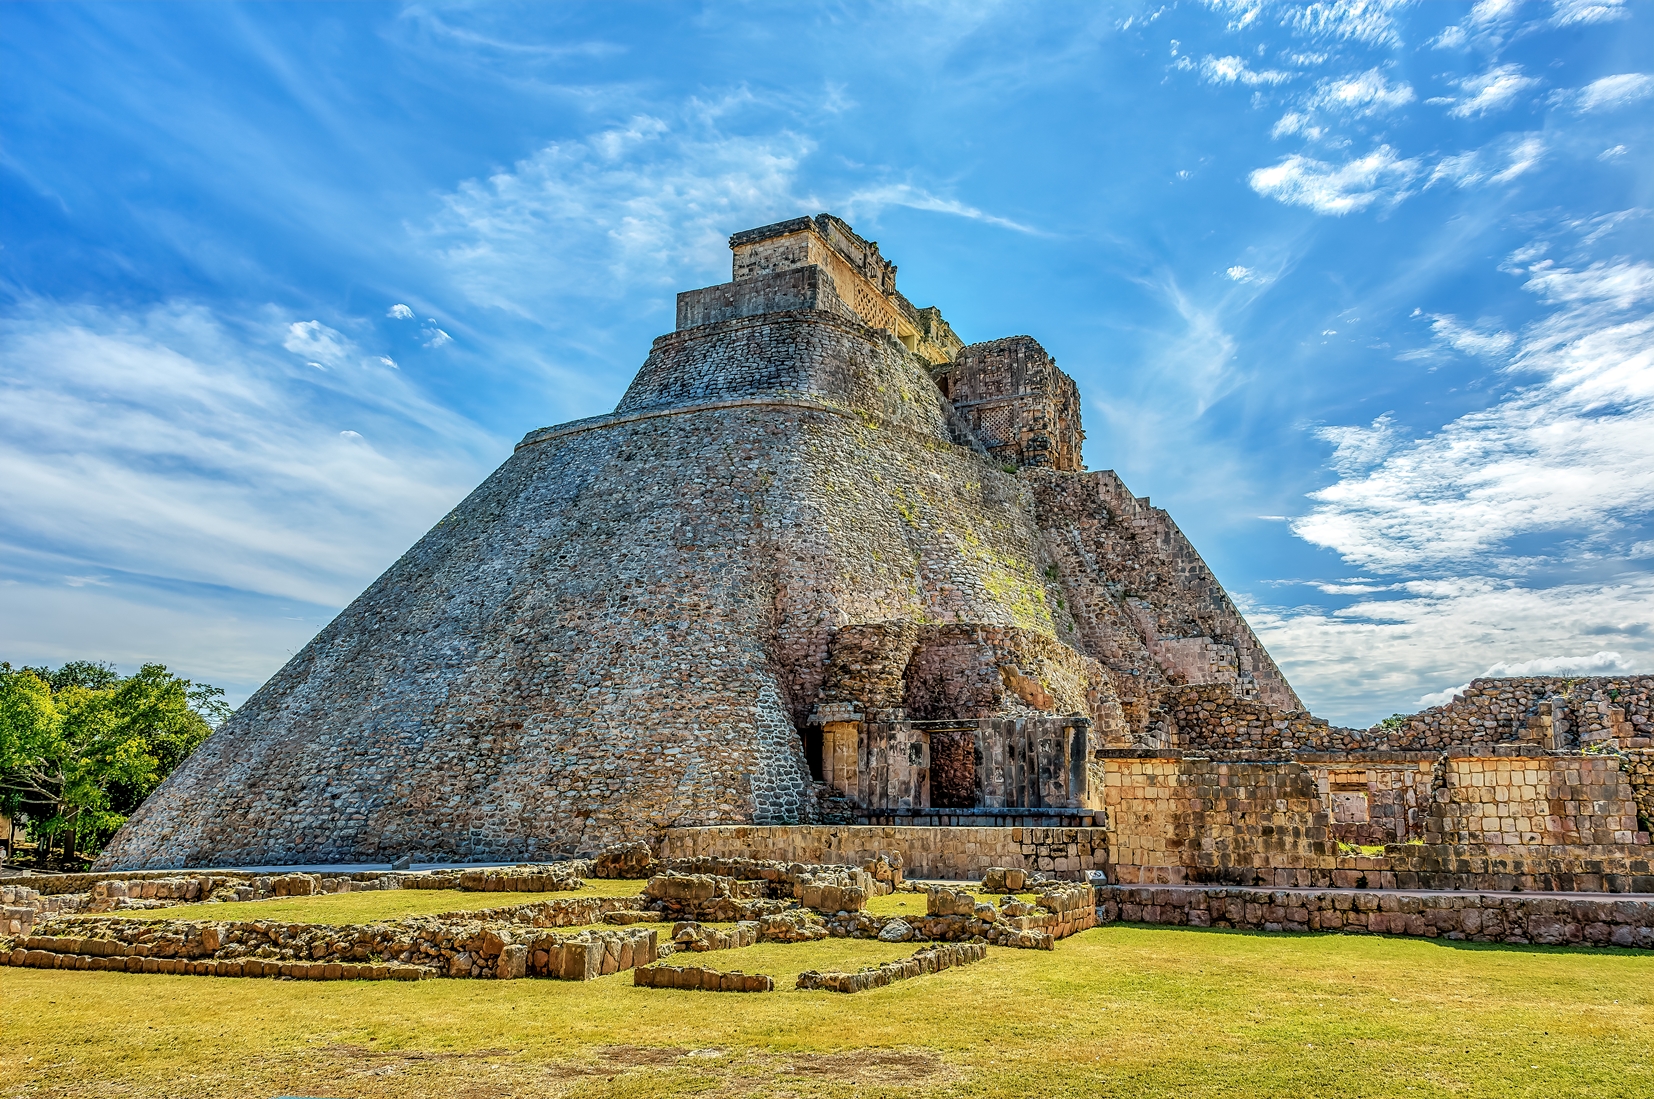 Uxmal pyramid on the Yucatan Peninsula - Ancient Mayan site